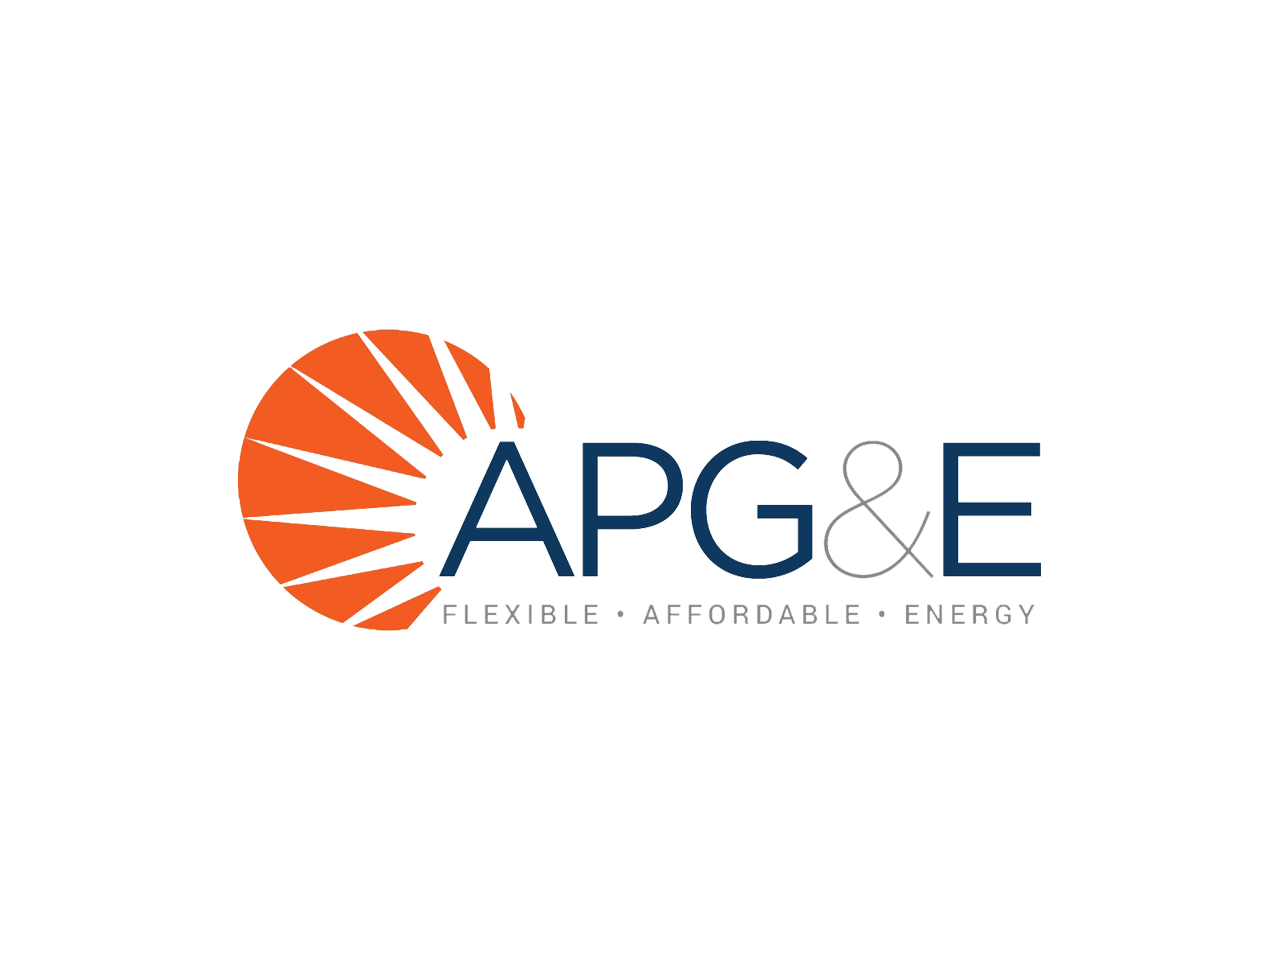 APG&E